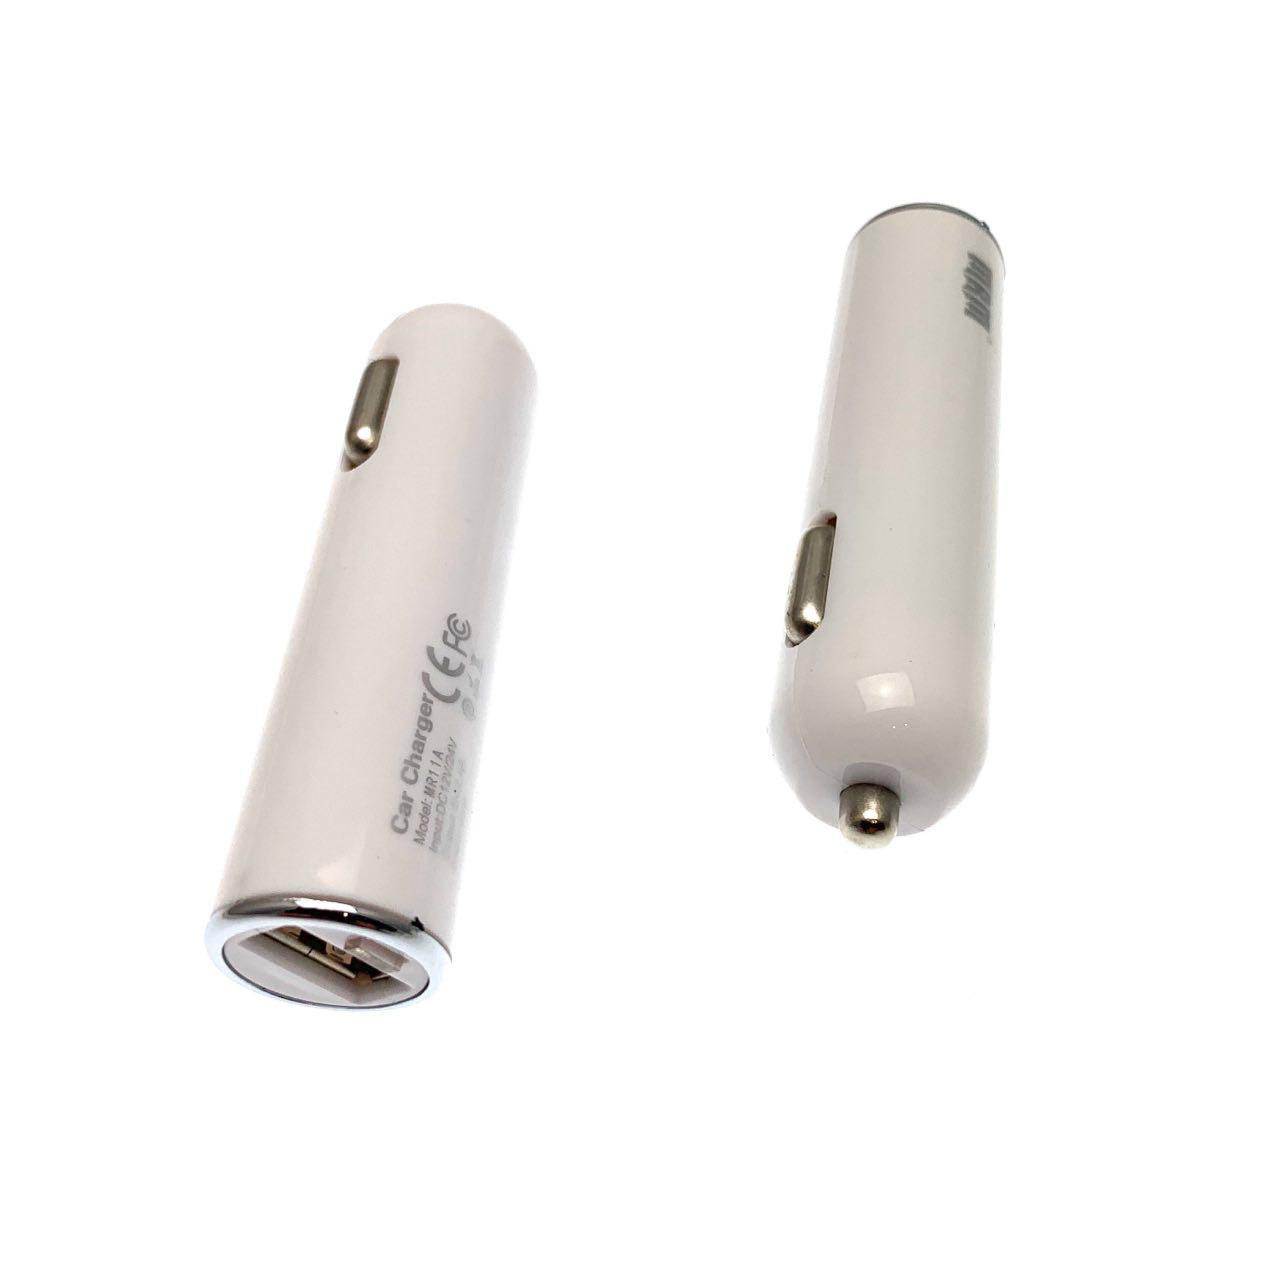 АЗУ (Автомобильное зарядное устройство) MRM MR11A, 2.4A, 1 USB, цвет белый